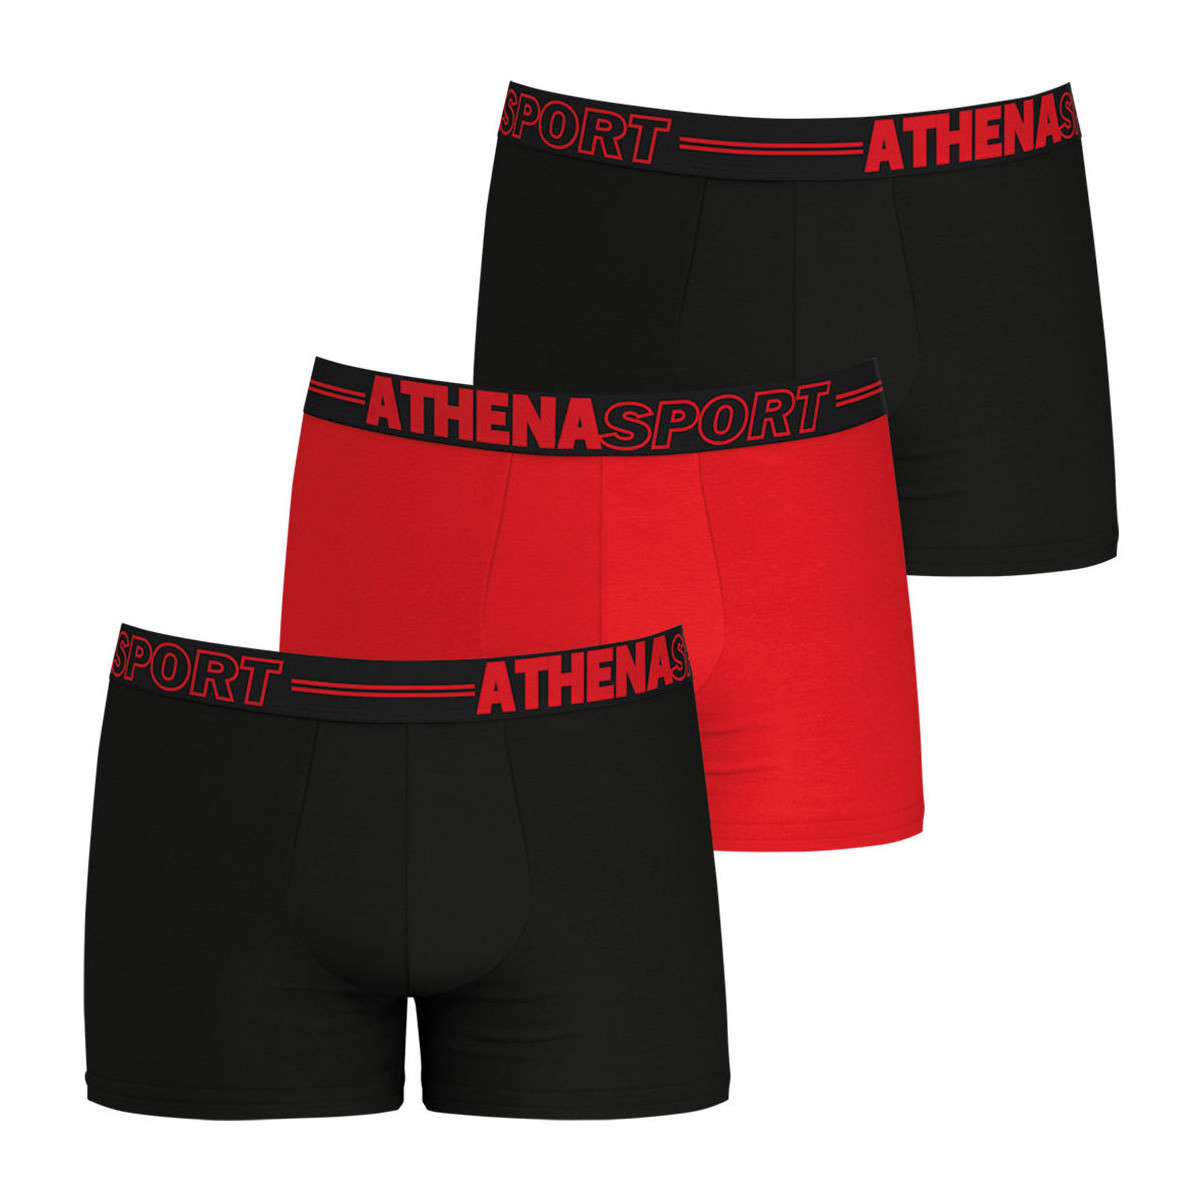 Sous-vêtements Homme Boxers Athena Lot de 3 boxers homme Ecopack Rouge